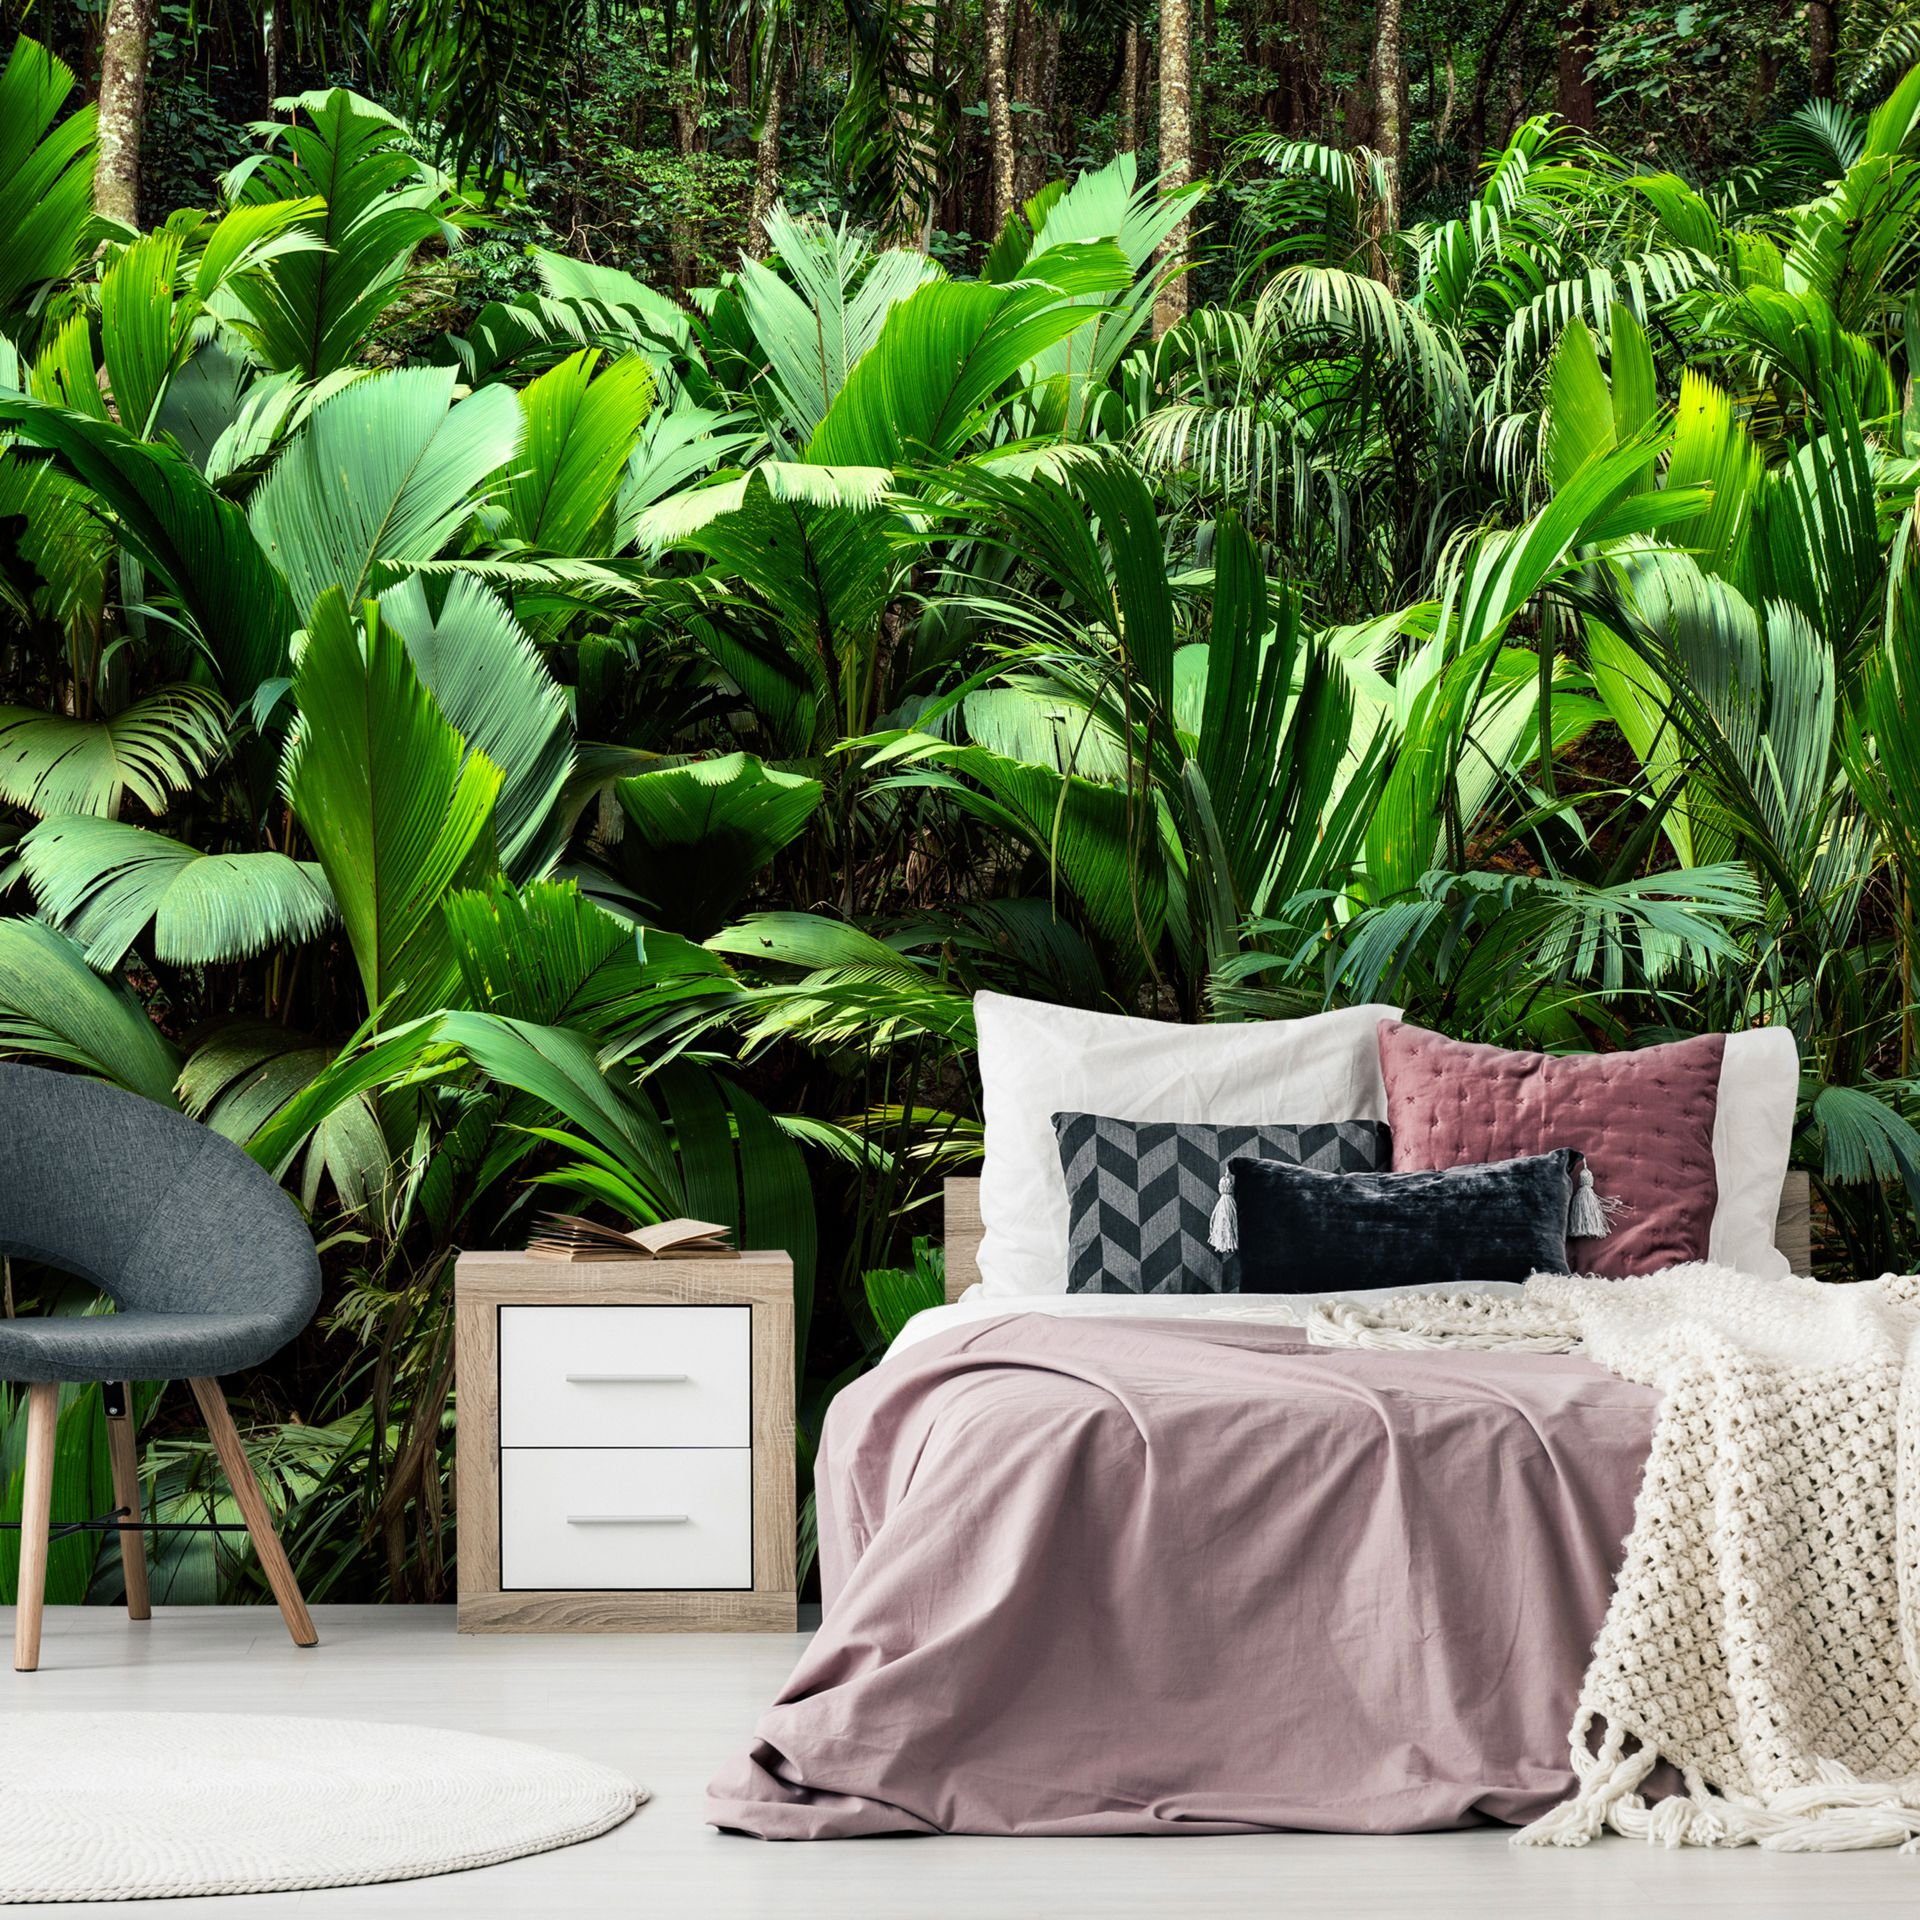 KUNSTLOFT Vliestapete Freshness of the Jungle 1x0.7 m, halb-matt, lichtbeständige Design Tapete